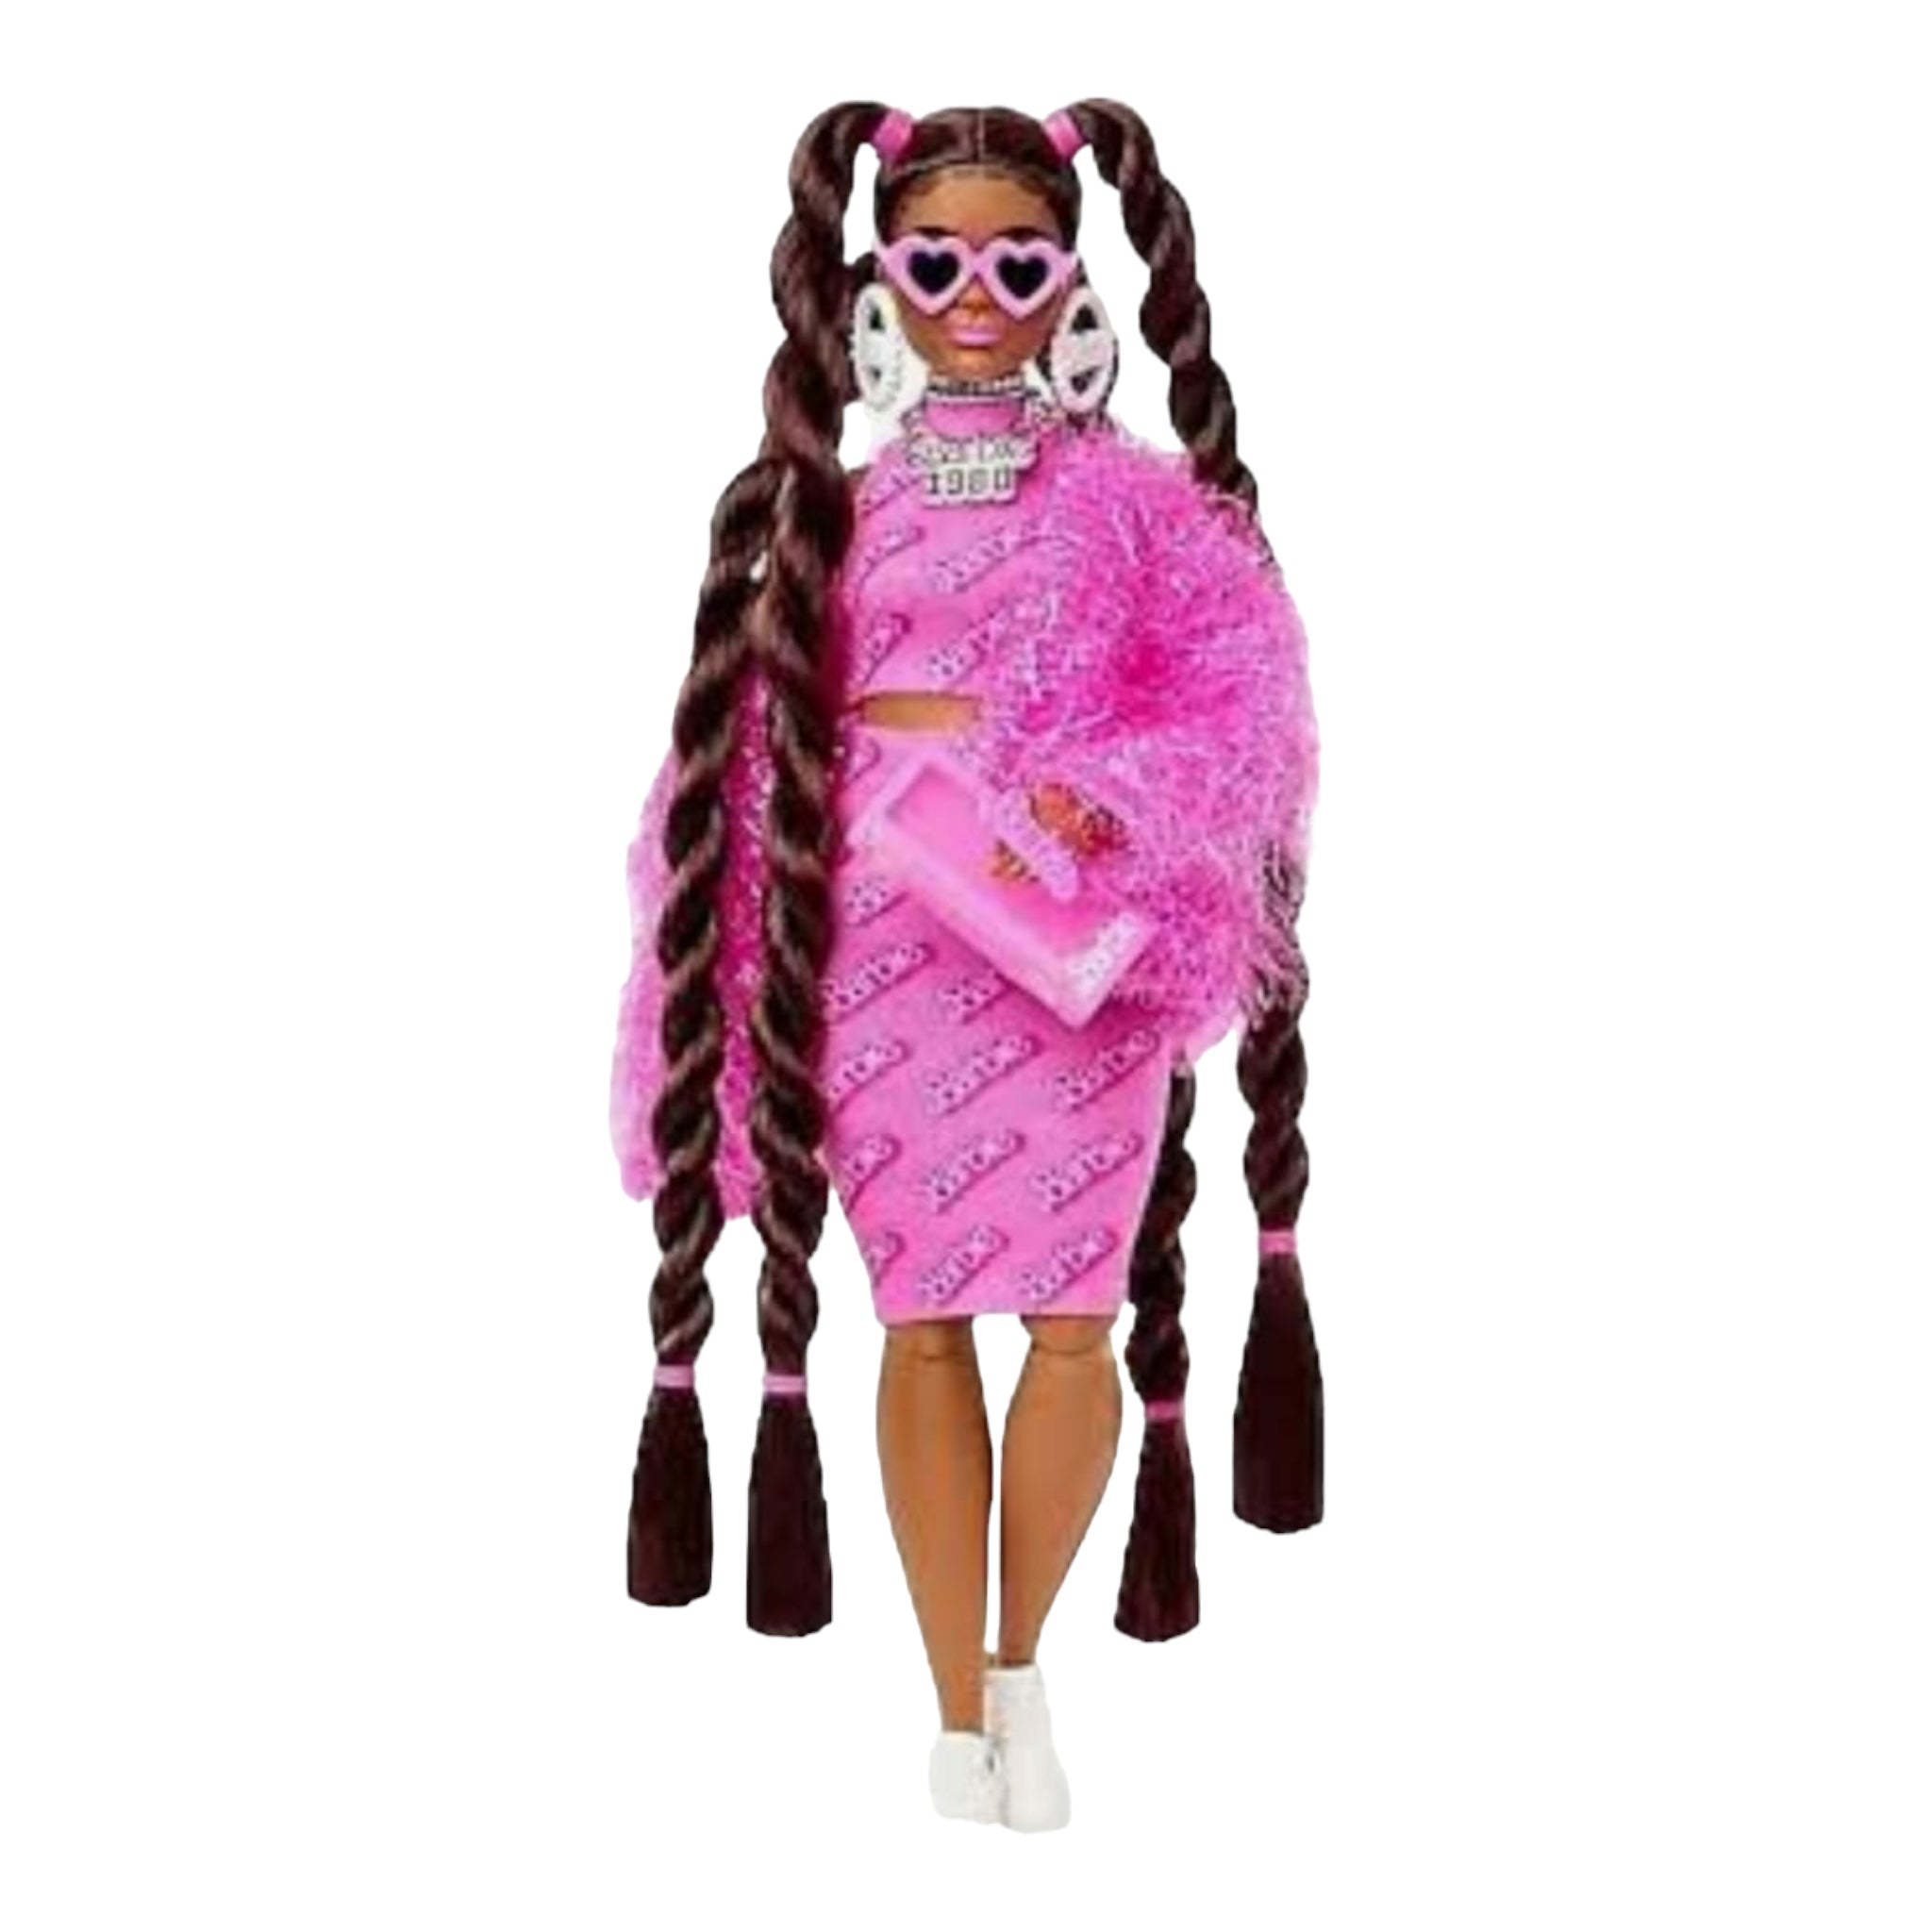 Prachtige, roze barbie pop met donkere huidskleur. Te koop bij Colourful Goodies.